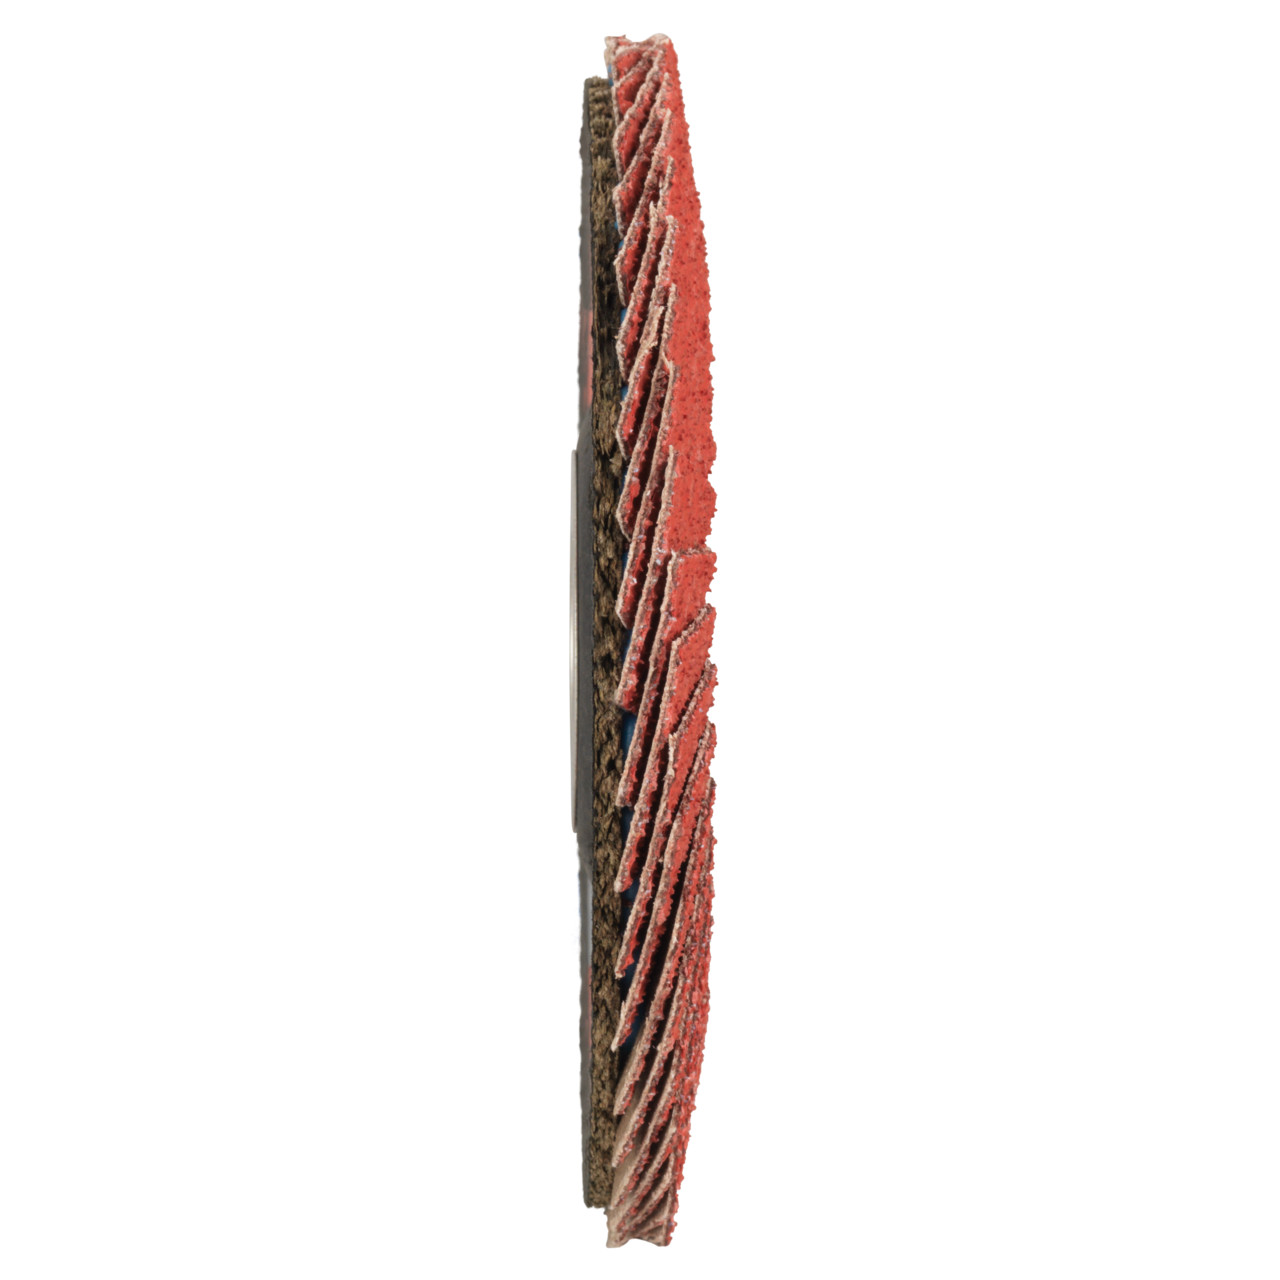 Tyrolit Arandela de seguridad dentada DxH 125x22,23 CERÁMICA para acero inoxidable, P80, forma: 28A - versión recta (versión con cuerpo de soporte de fibra de vidrio), Art. 34166688